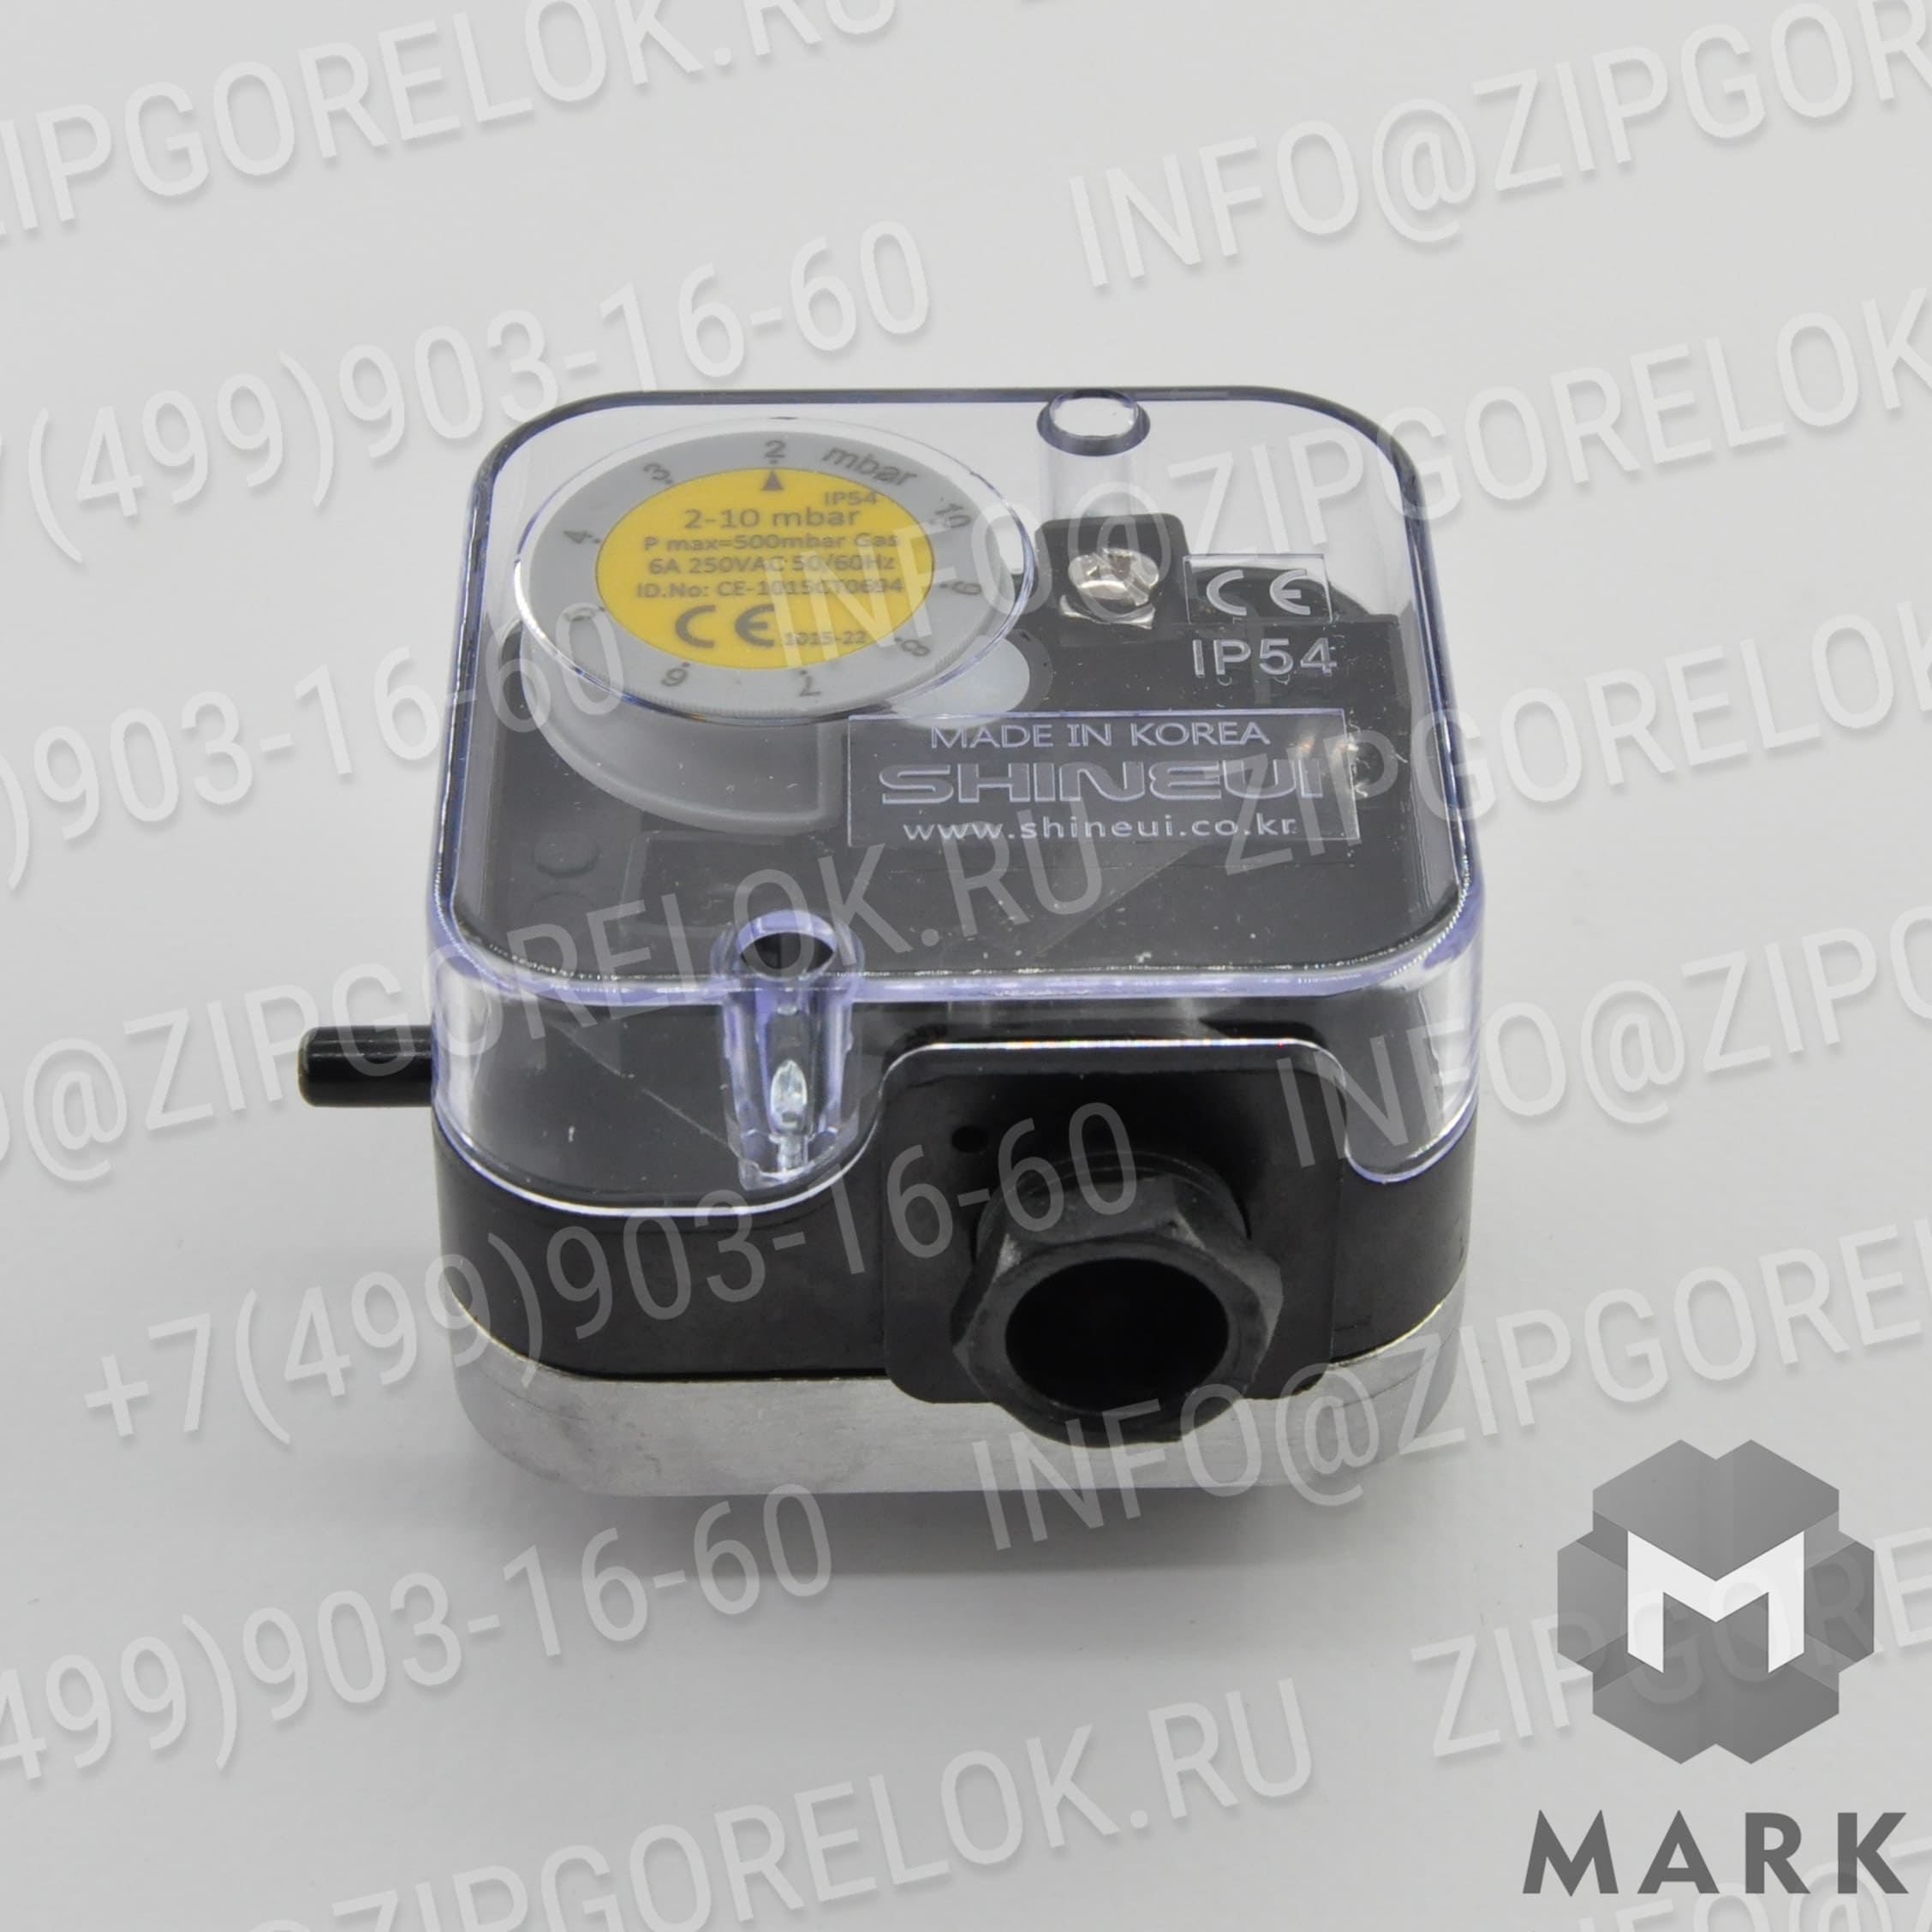 SGPS-10V Газовые компоненты: Кольцевая прокладка ?25 X 4 мм